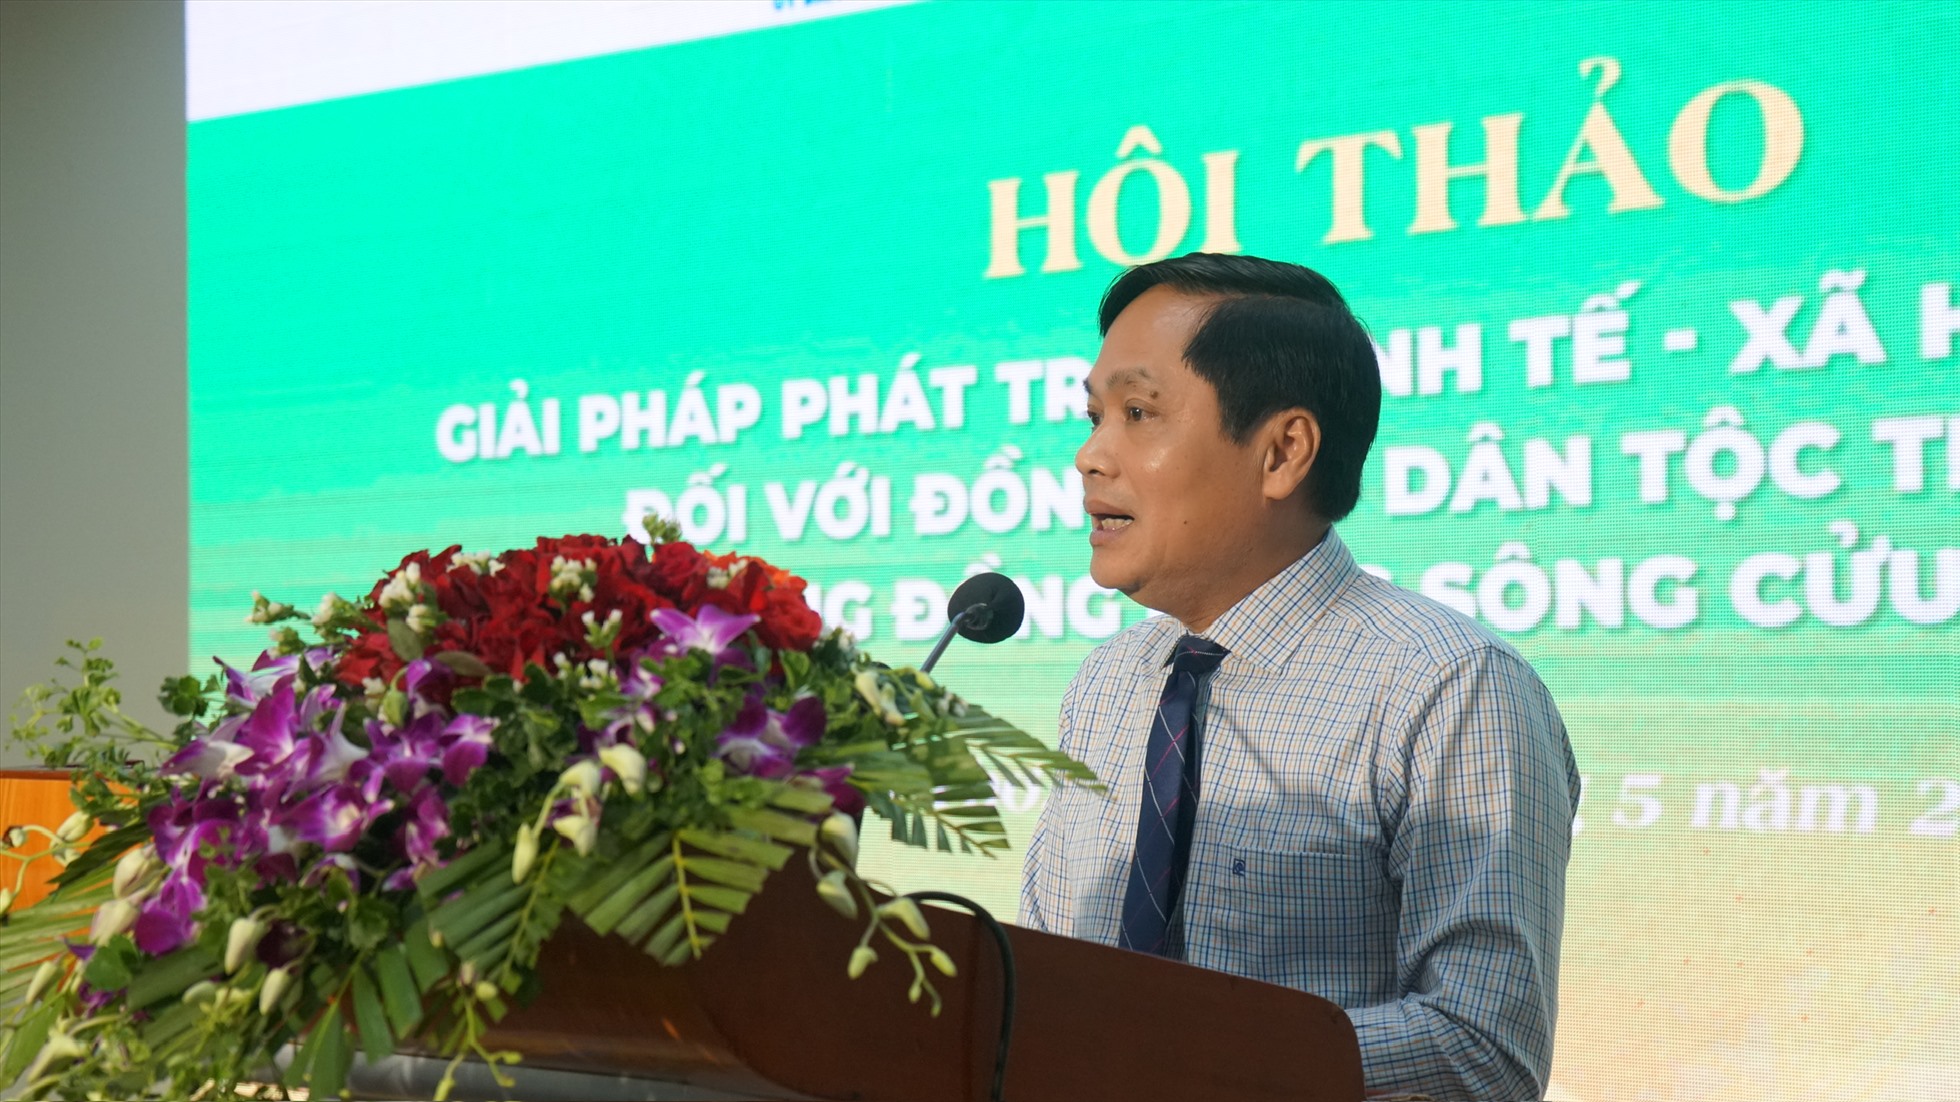 Phó Chủ tịch UBND TP. Cần Thơ - ông Nguyễn Văn Hồng phát biểu tại Hội thảo